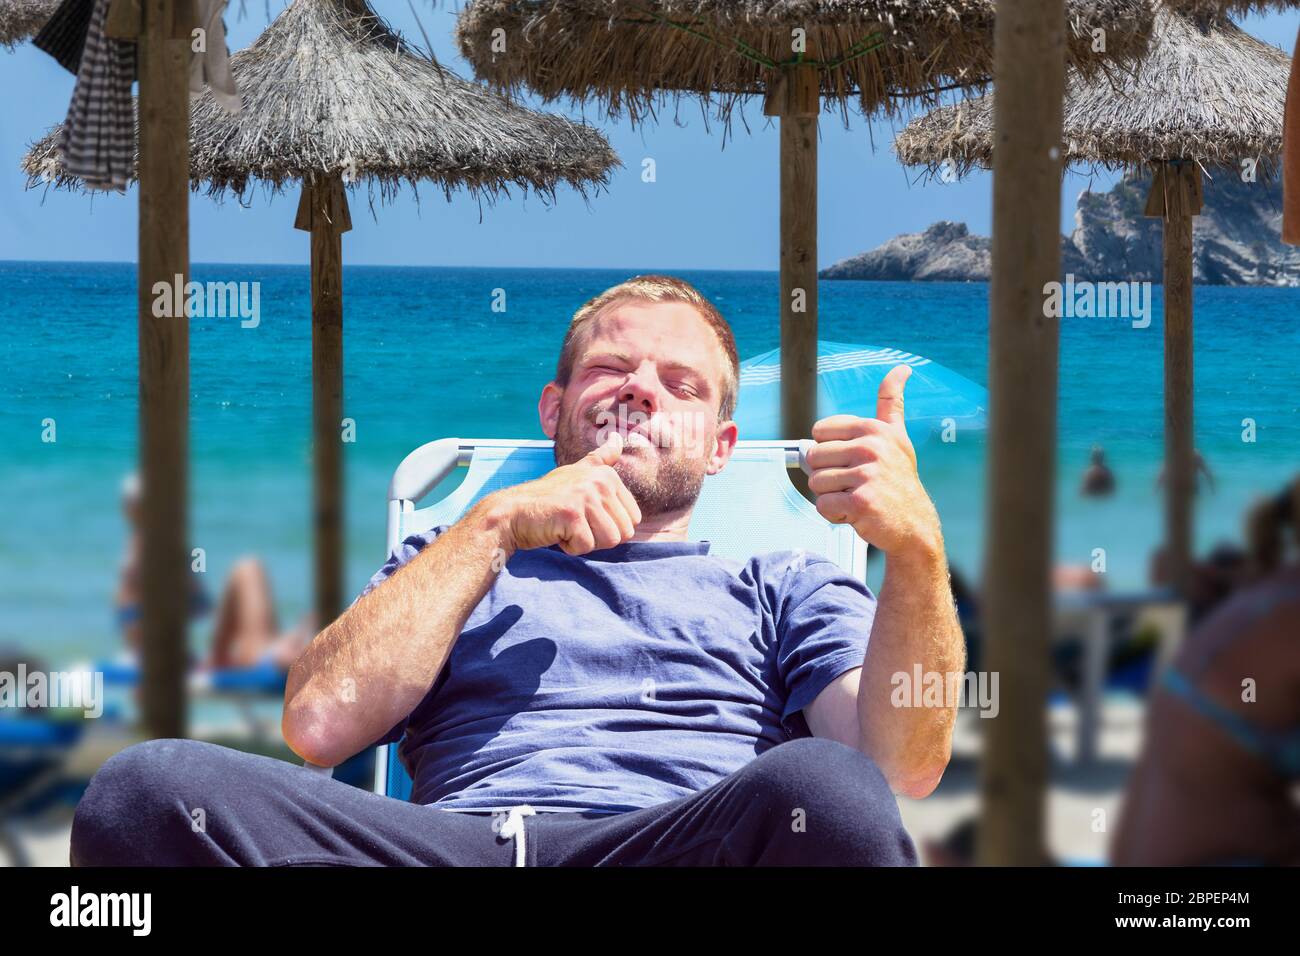 Urlauber, Strandleben am Strand. Focus auf Mann im Liegestuhl. Hintergrund gewünschte unschärfe. Banque D'Images